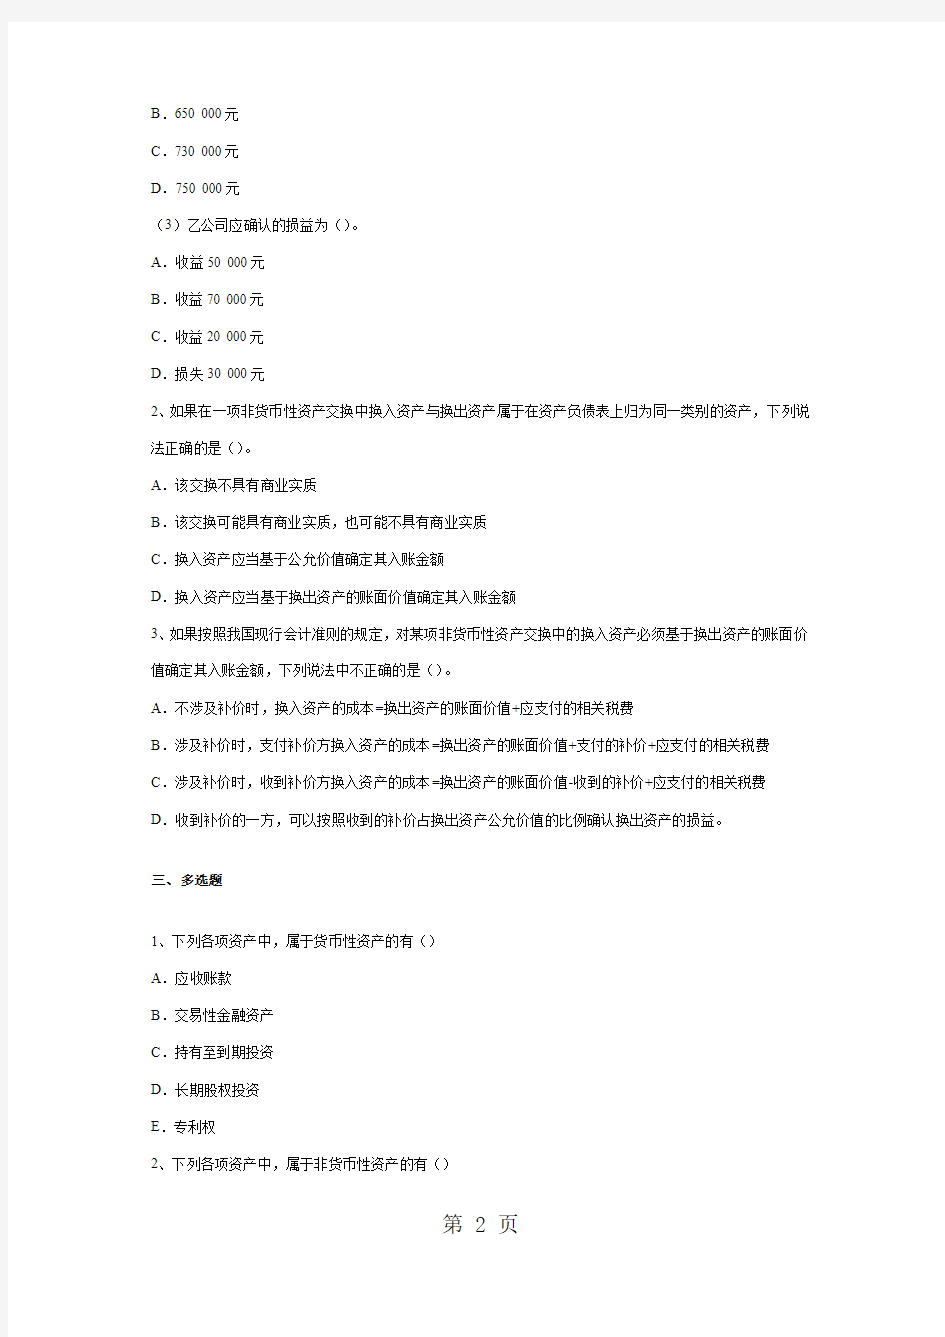 高级会计学练习题(2019.11.21)共13页word资料